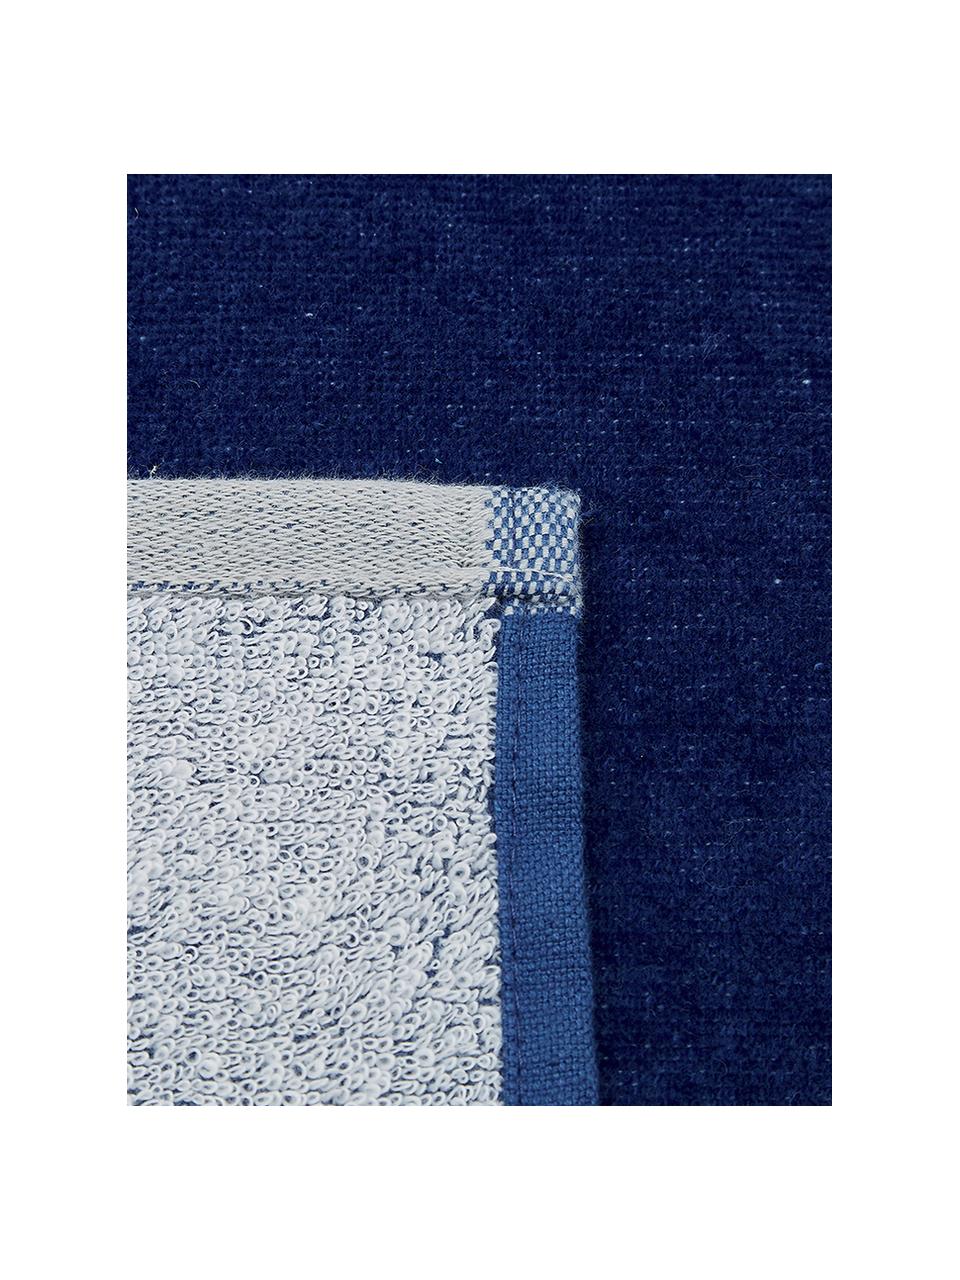 Strandtuch Spork mit Sternen-Motiv, 100% Baumwolle
leichte Qualität 380 g/m², Blau, Weiß, 80 x 160 cm